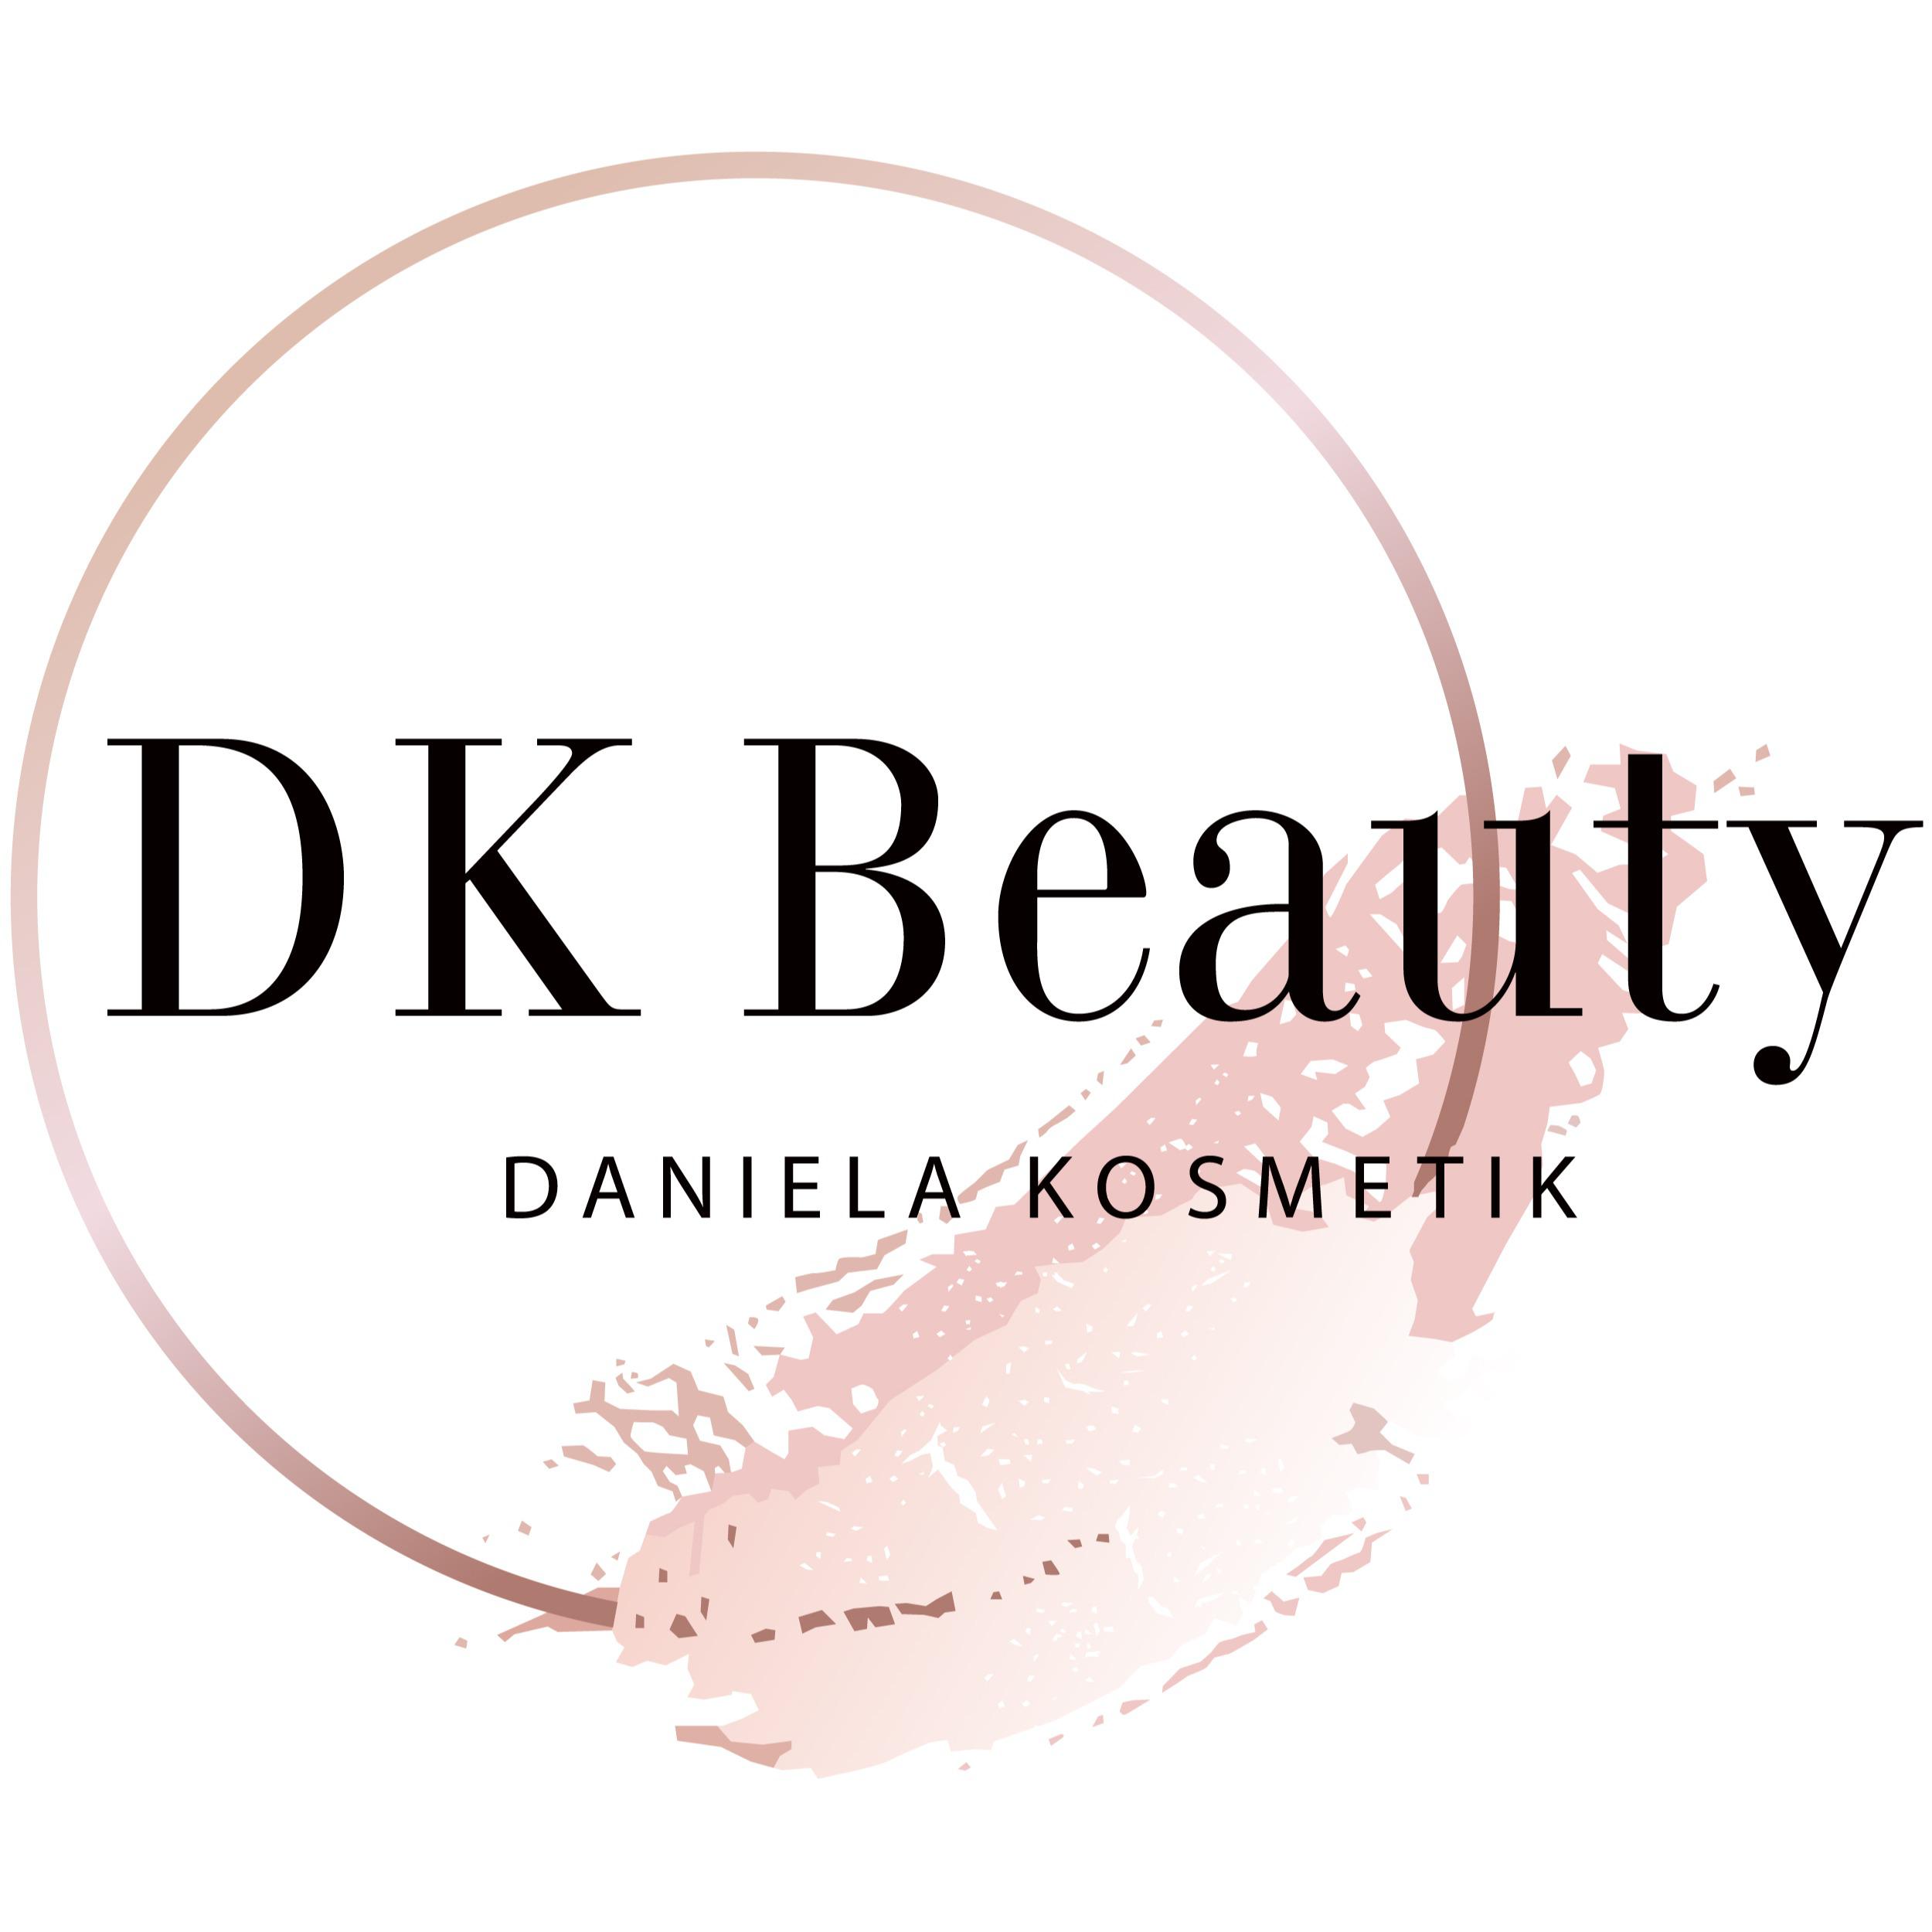 DK Beauty in München - Logo